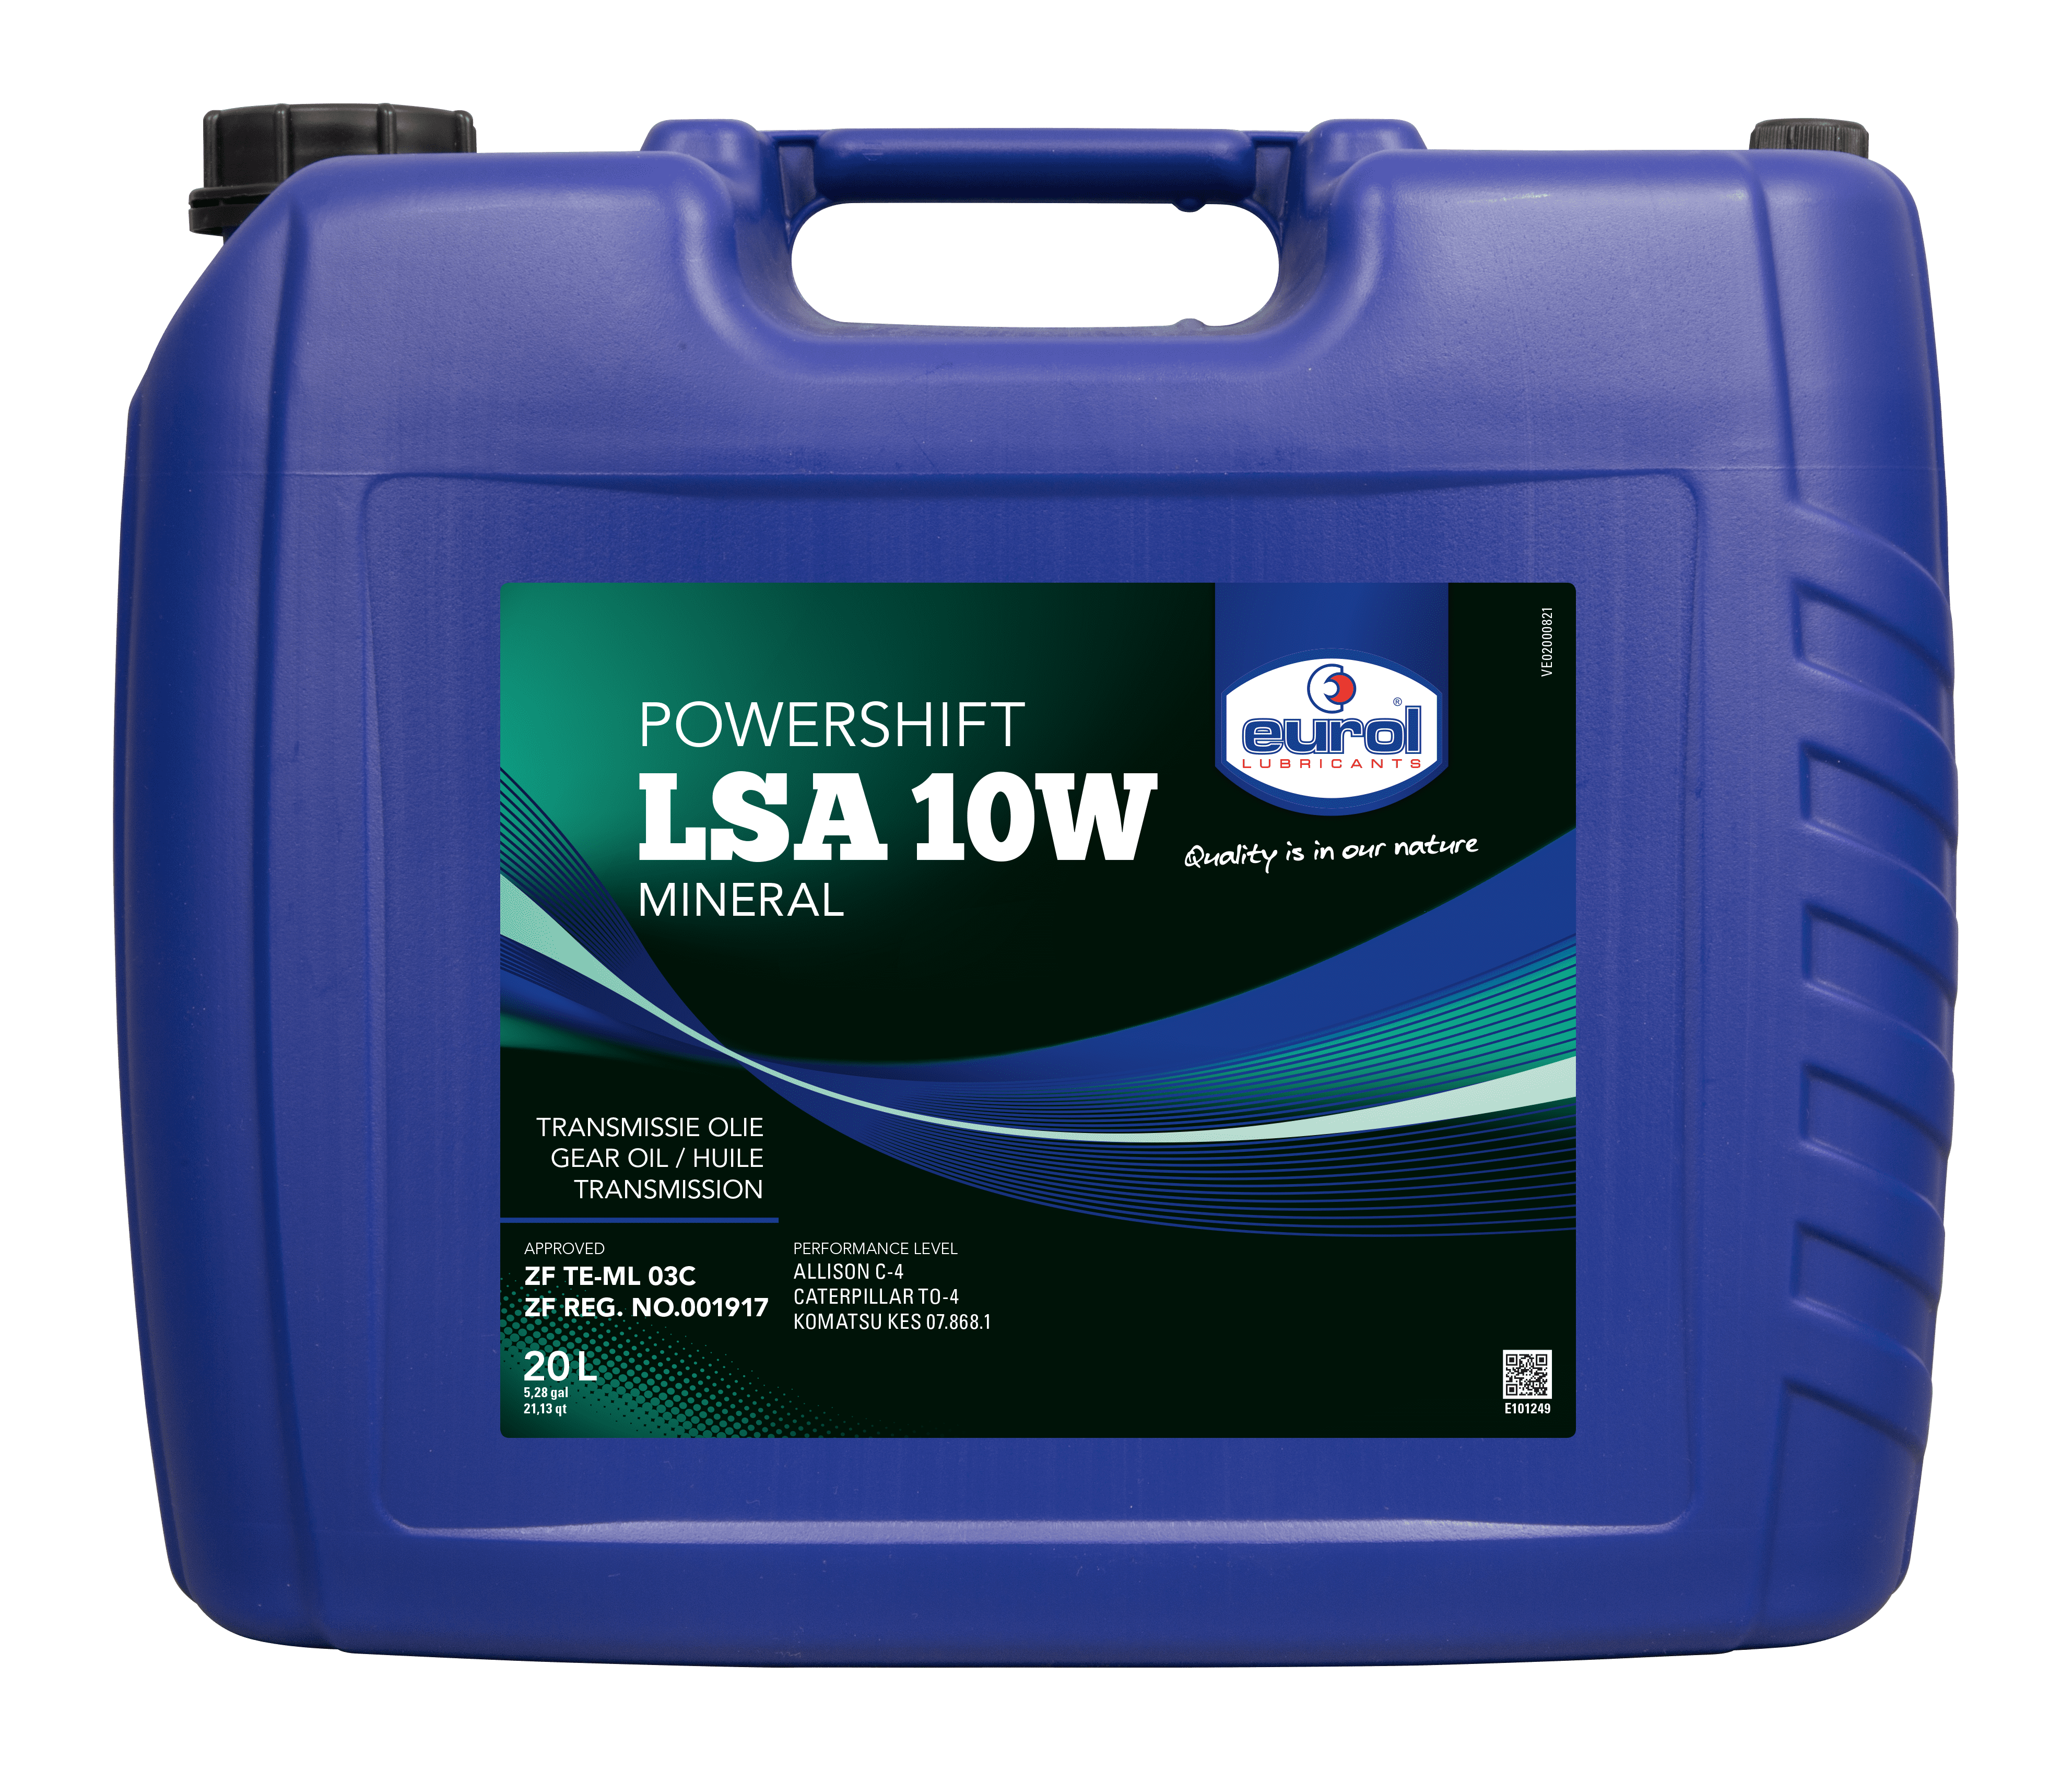 Eurol Powershift LSA 10W, 20 lt